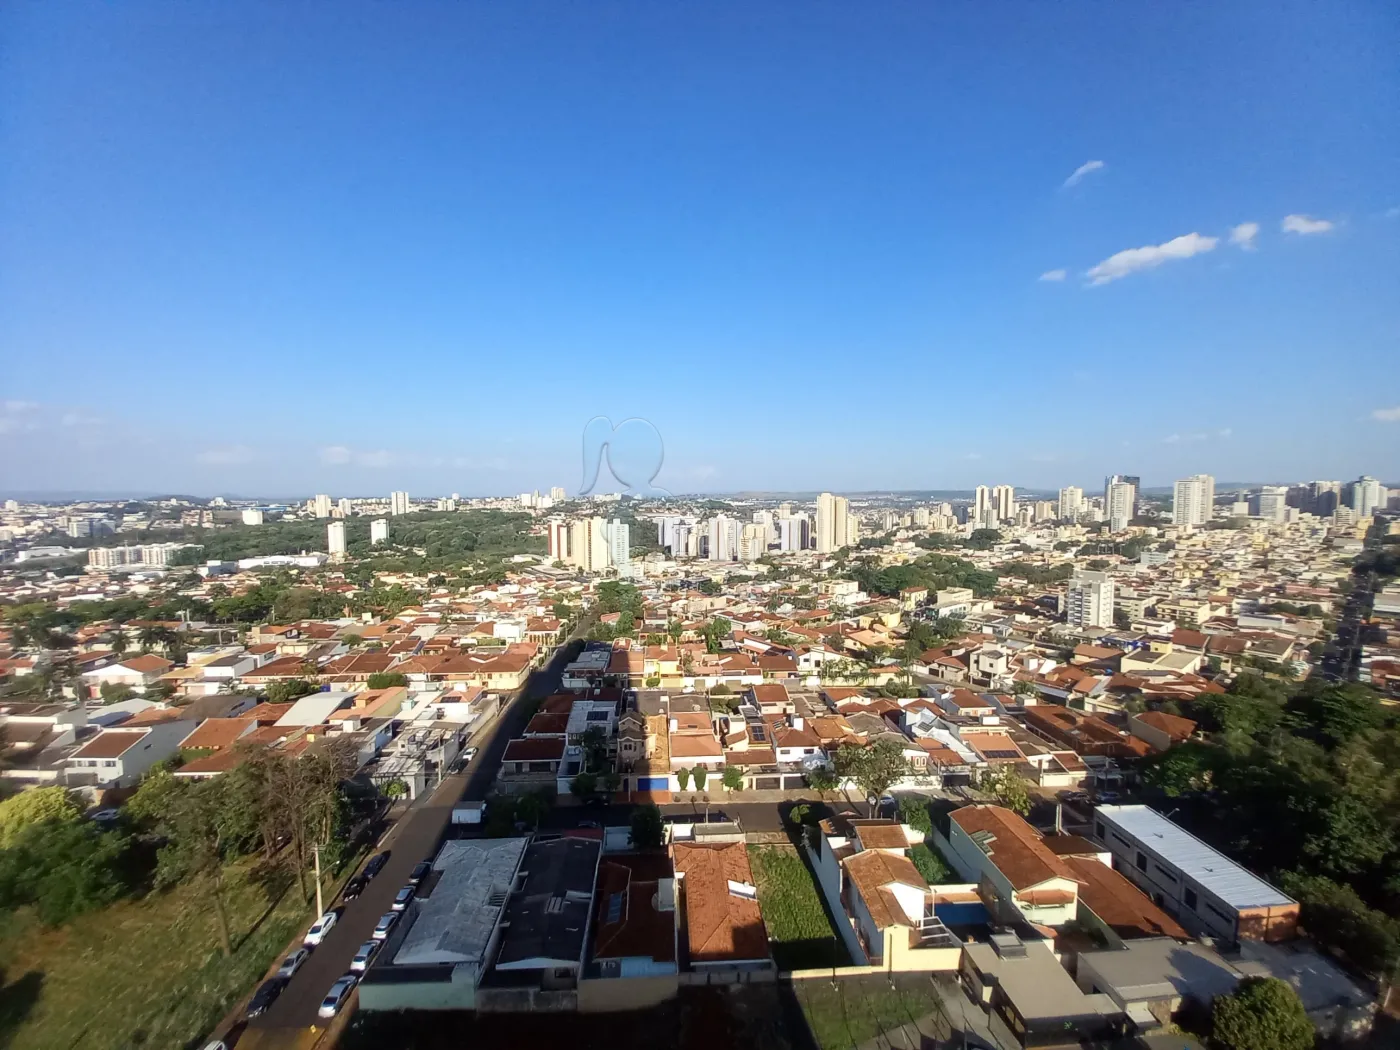 Alugar Apartamentos / Padrão em Ribeirão Preto R$ 2.100,00 - Foto 9